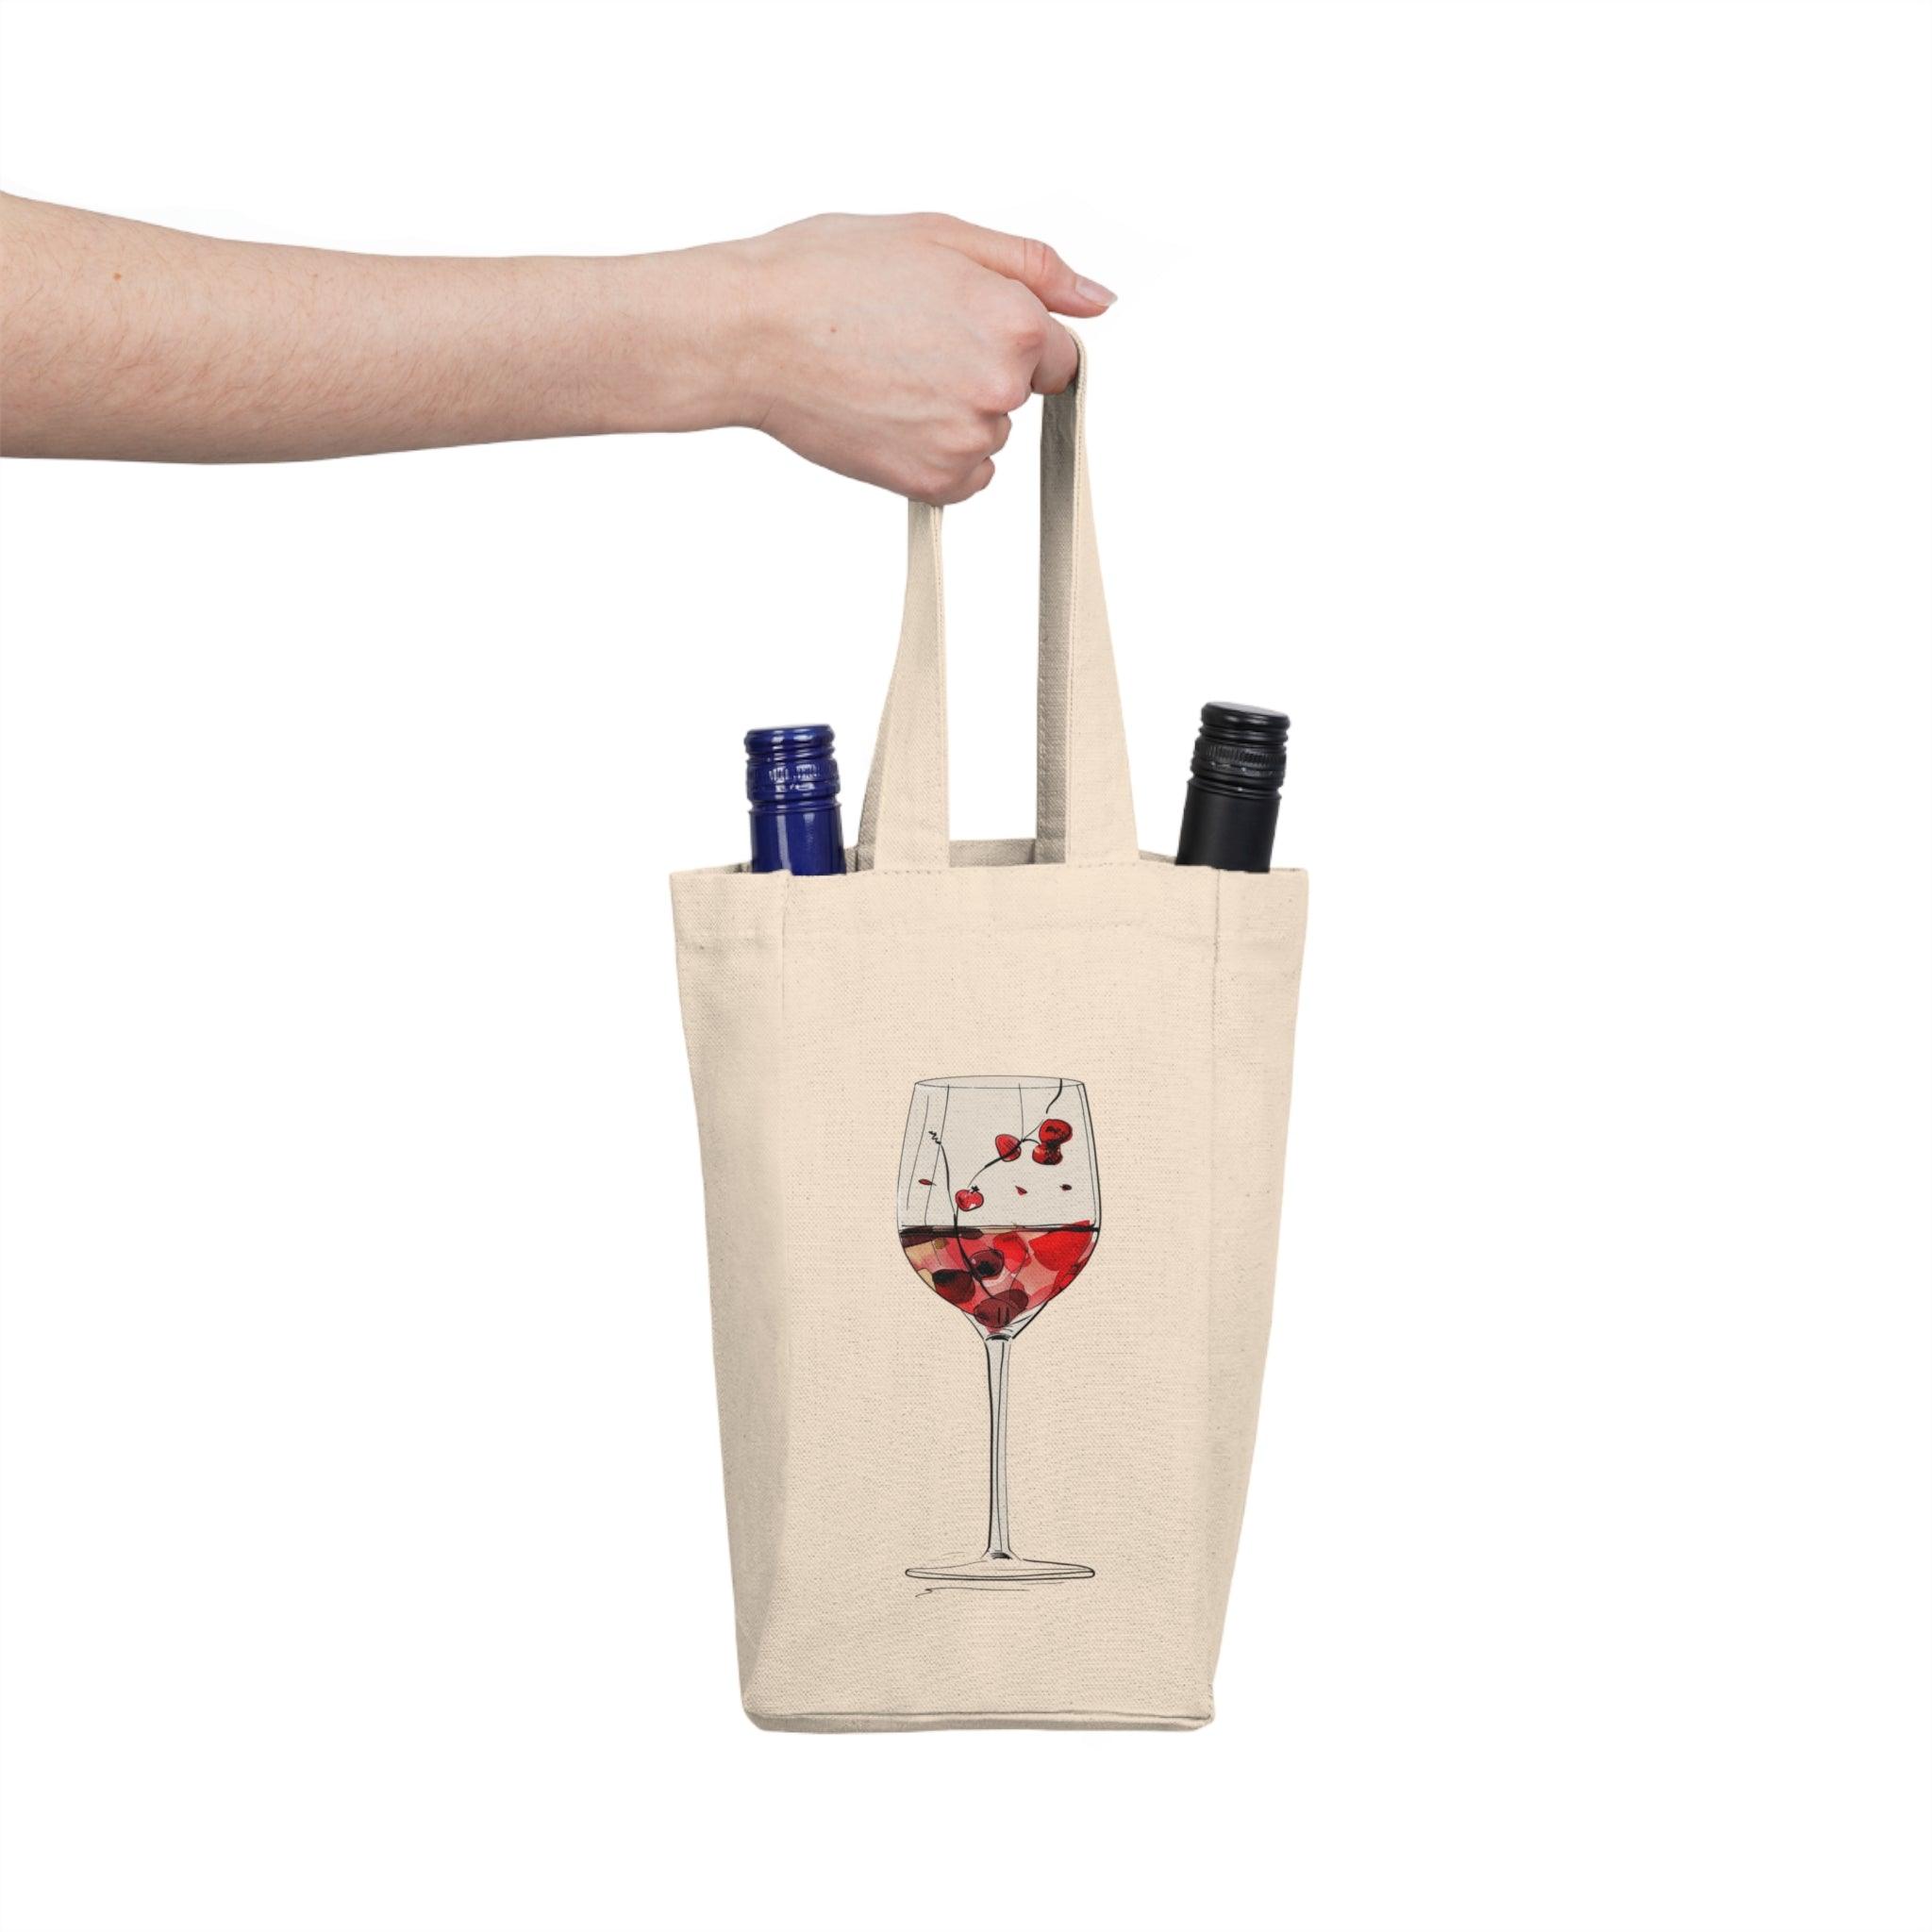 2 bottle wine tote bag